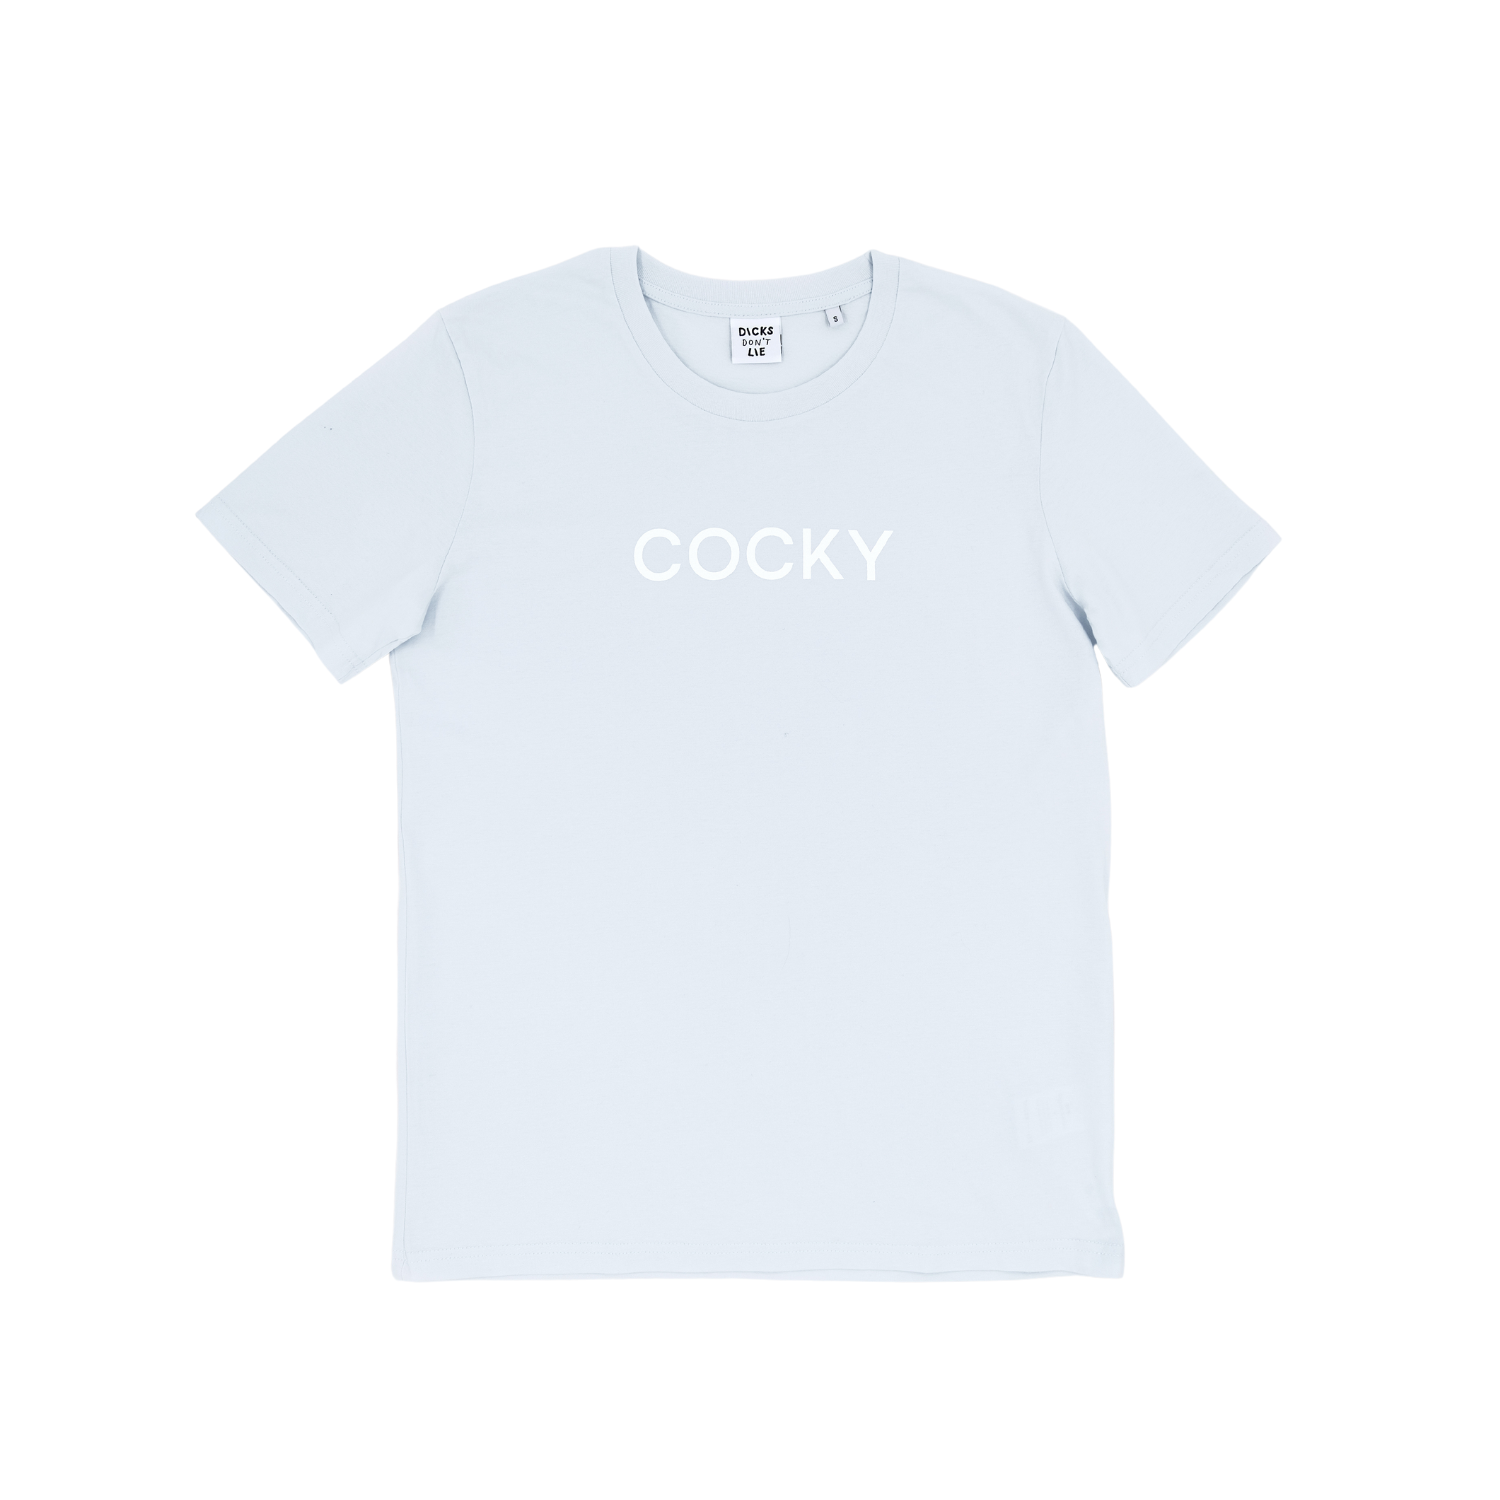 Blauwe Cocky T-Shirt van het merk Dicks Don't Lie perfect voor gay mannen en te koop bij Flavourez.